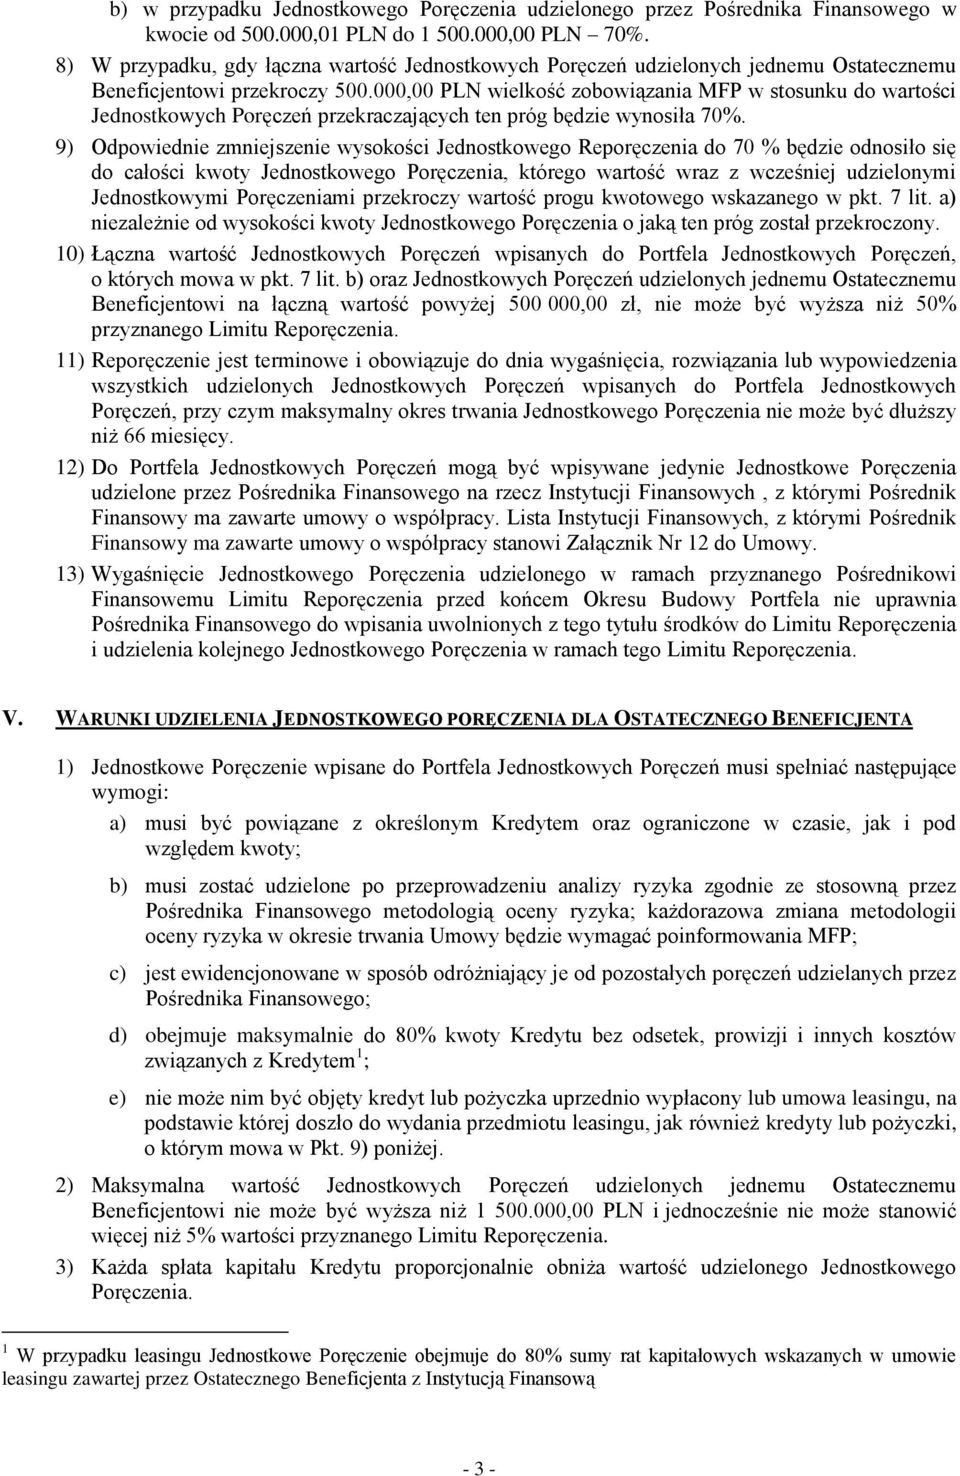 000,00 PLN wielkość zobowiązania MFP w stosunku do wartości Jednostkowych Poręczeń przekraczających ten próg będzie wynosiła 70%.